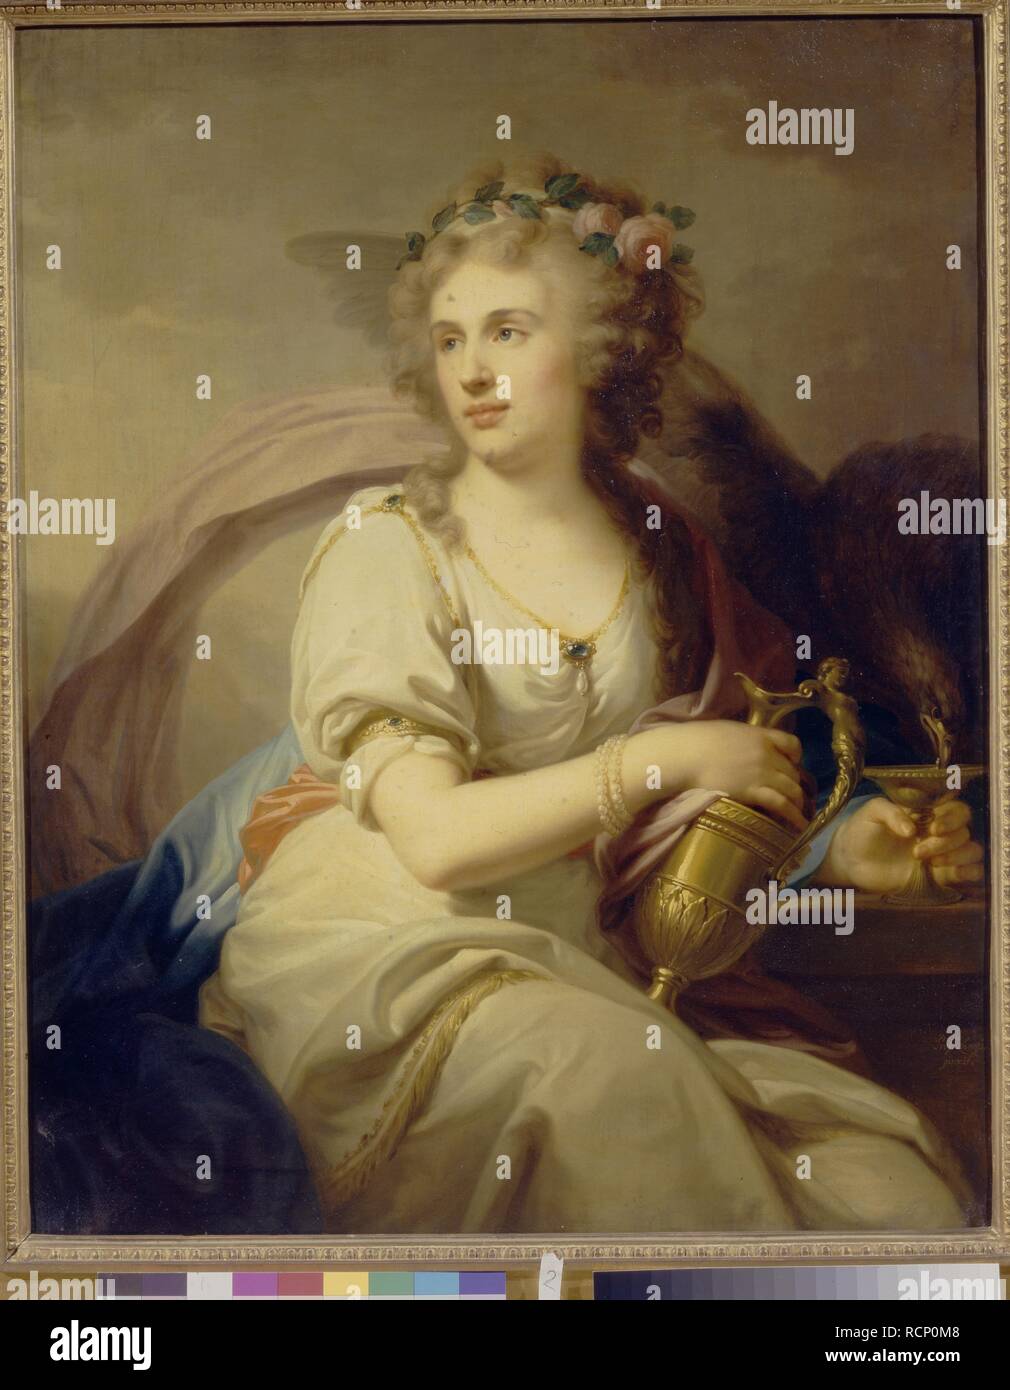 Ritratto di principessa Ekaterina Fyodorovna Dolgorukova (1769-1849) come Hebe. Museo: Membro Galleria Tretyakov di Mosca. Autore: Lampi, Johann-Baptist von, il sambuco. Foto Stock